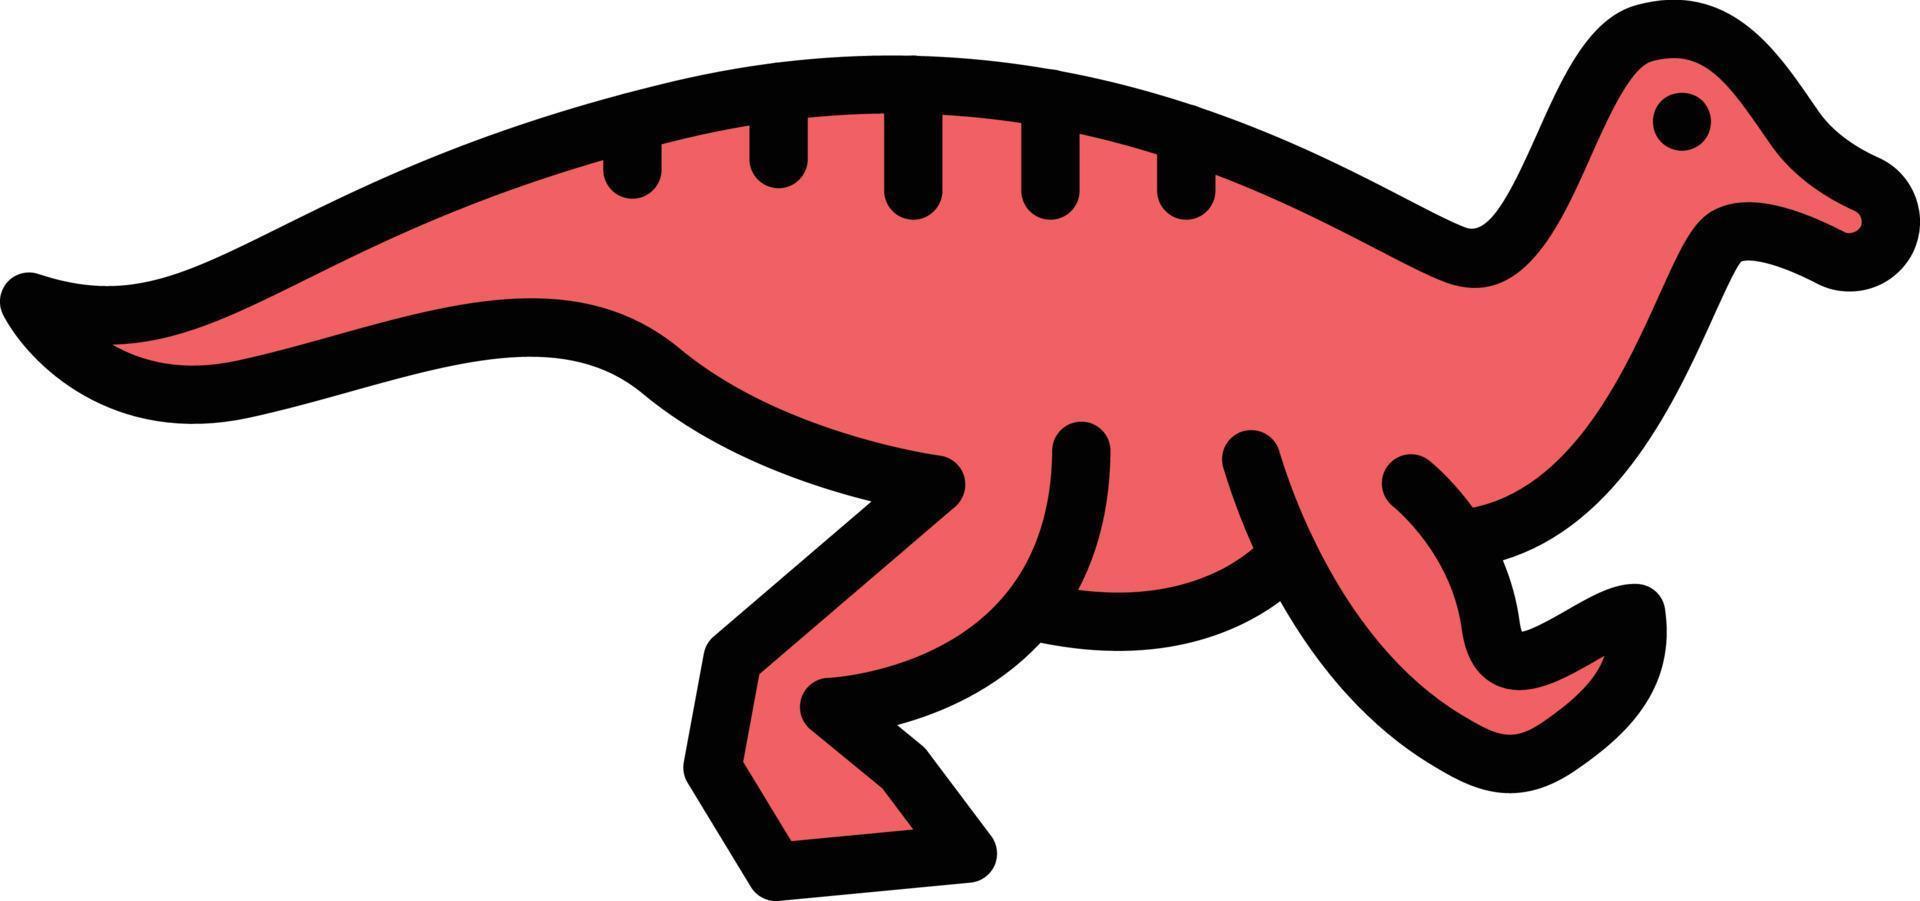 illustration vectorielle de dinosaure sur fond.symboles de qualité premium.icônes vectorielles pour le concept et la conception graphique. vecteur